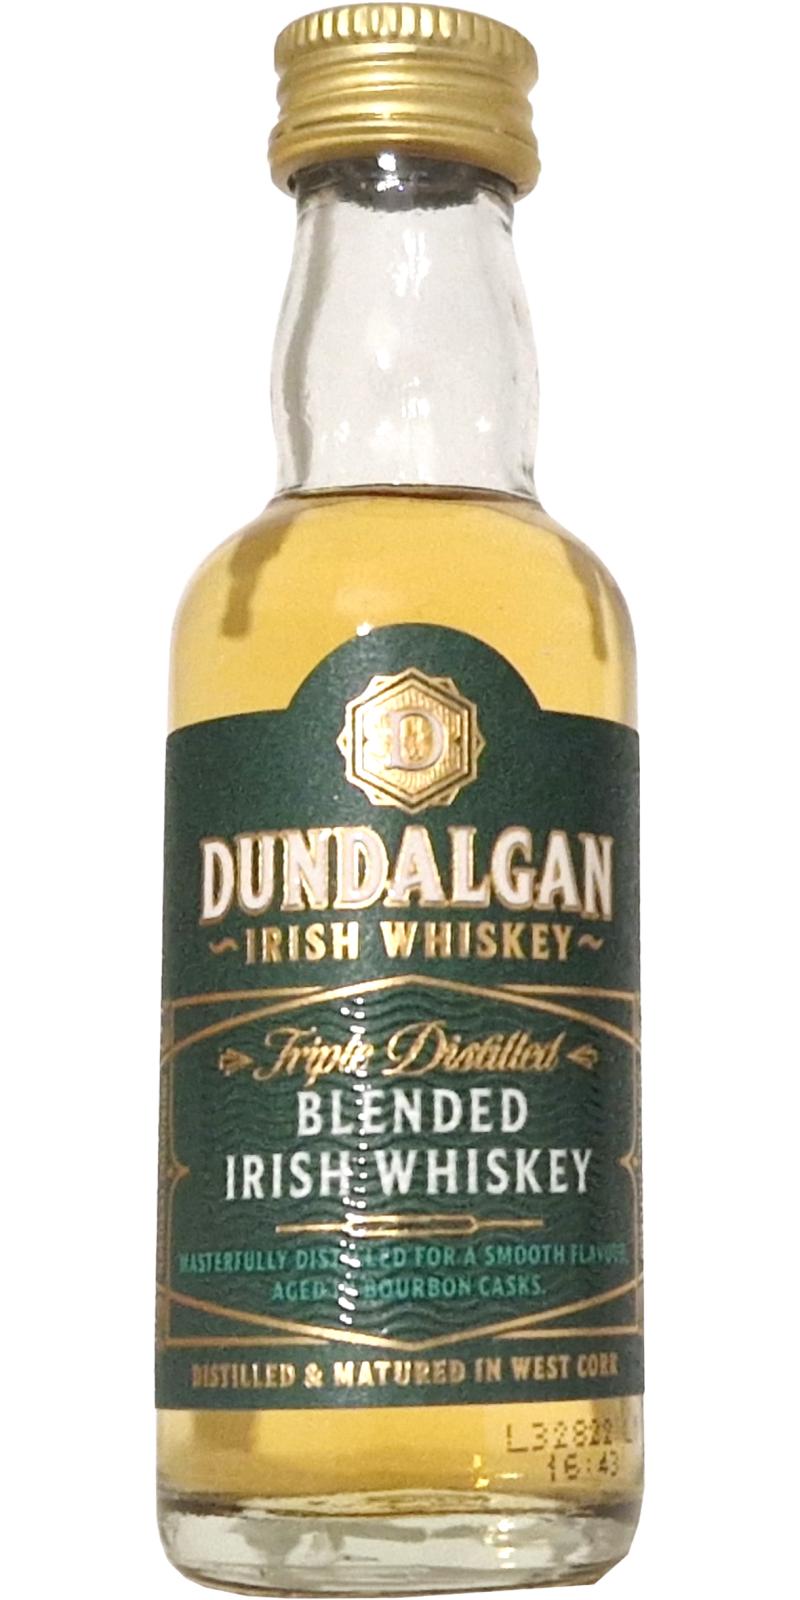 Irish and Dundalgan Blended Whiskey Ratings - - Whiskybase reviews